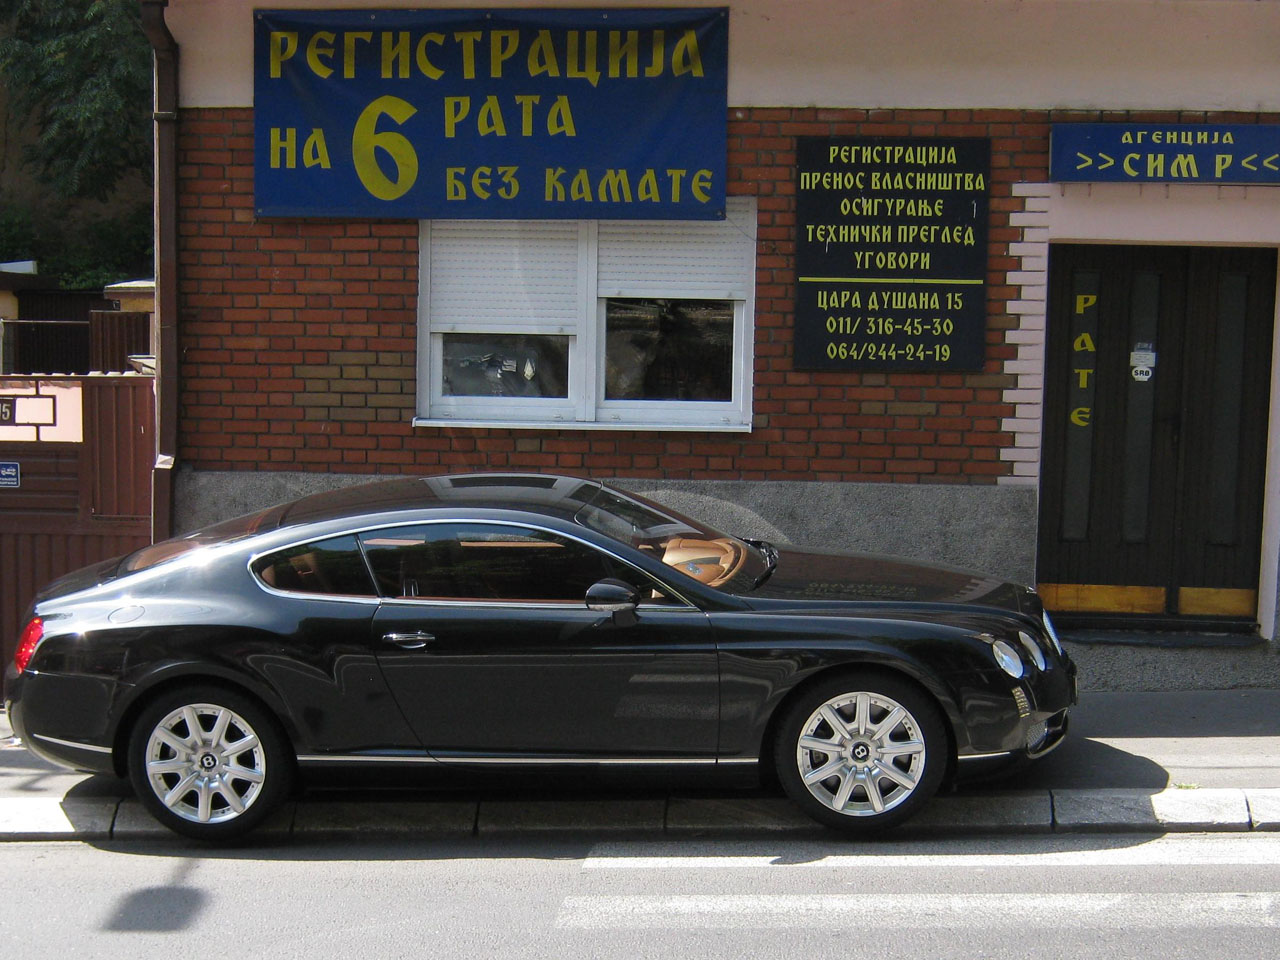 Photo 9 - AGENCIJA SIM R Car registration Belgrade